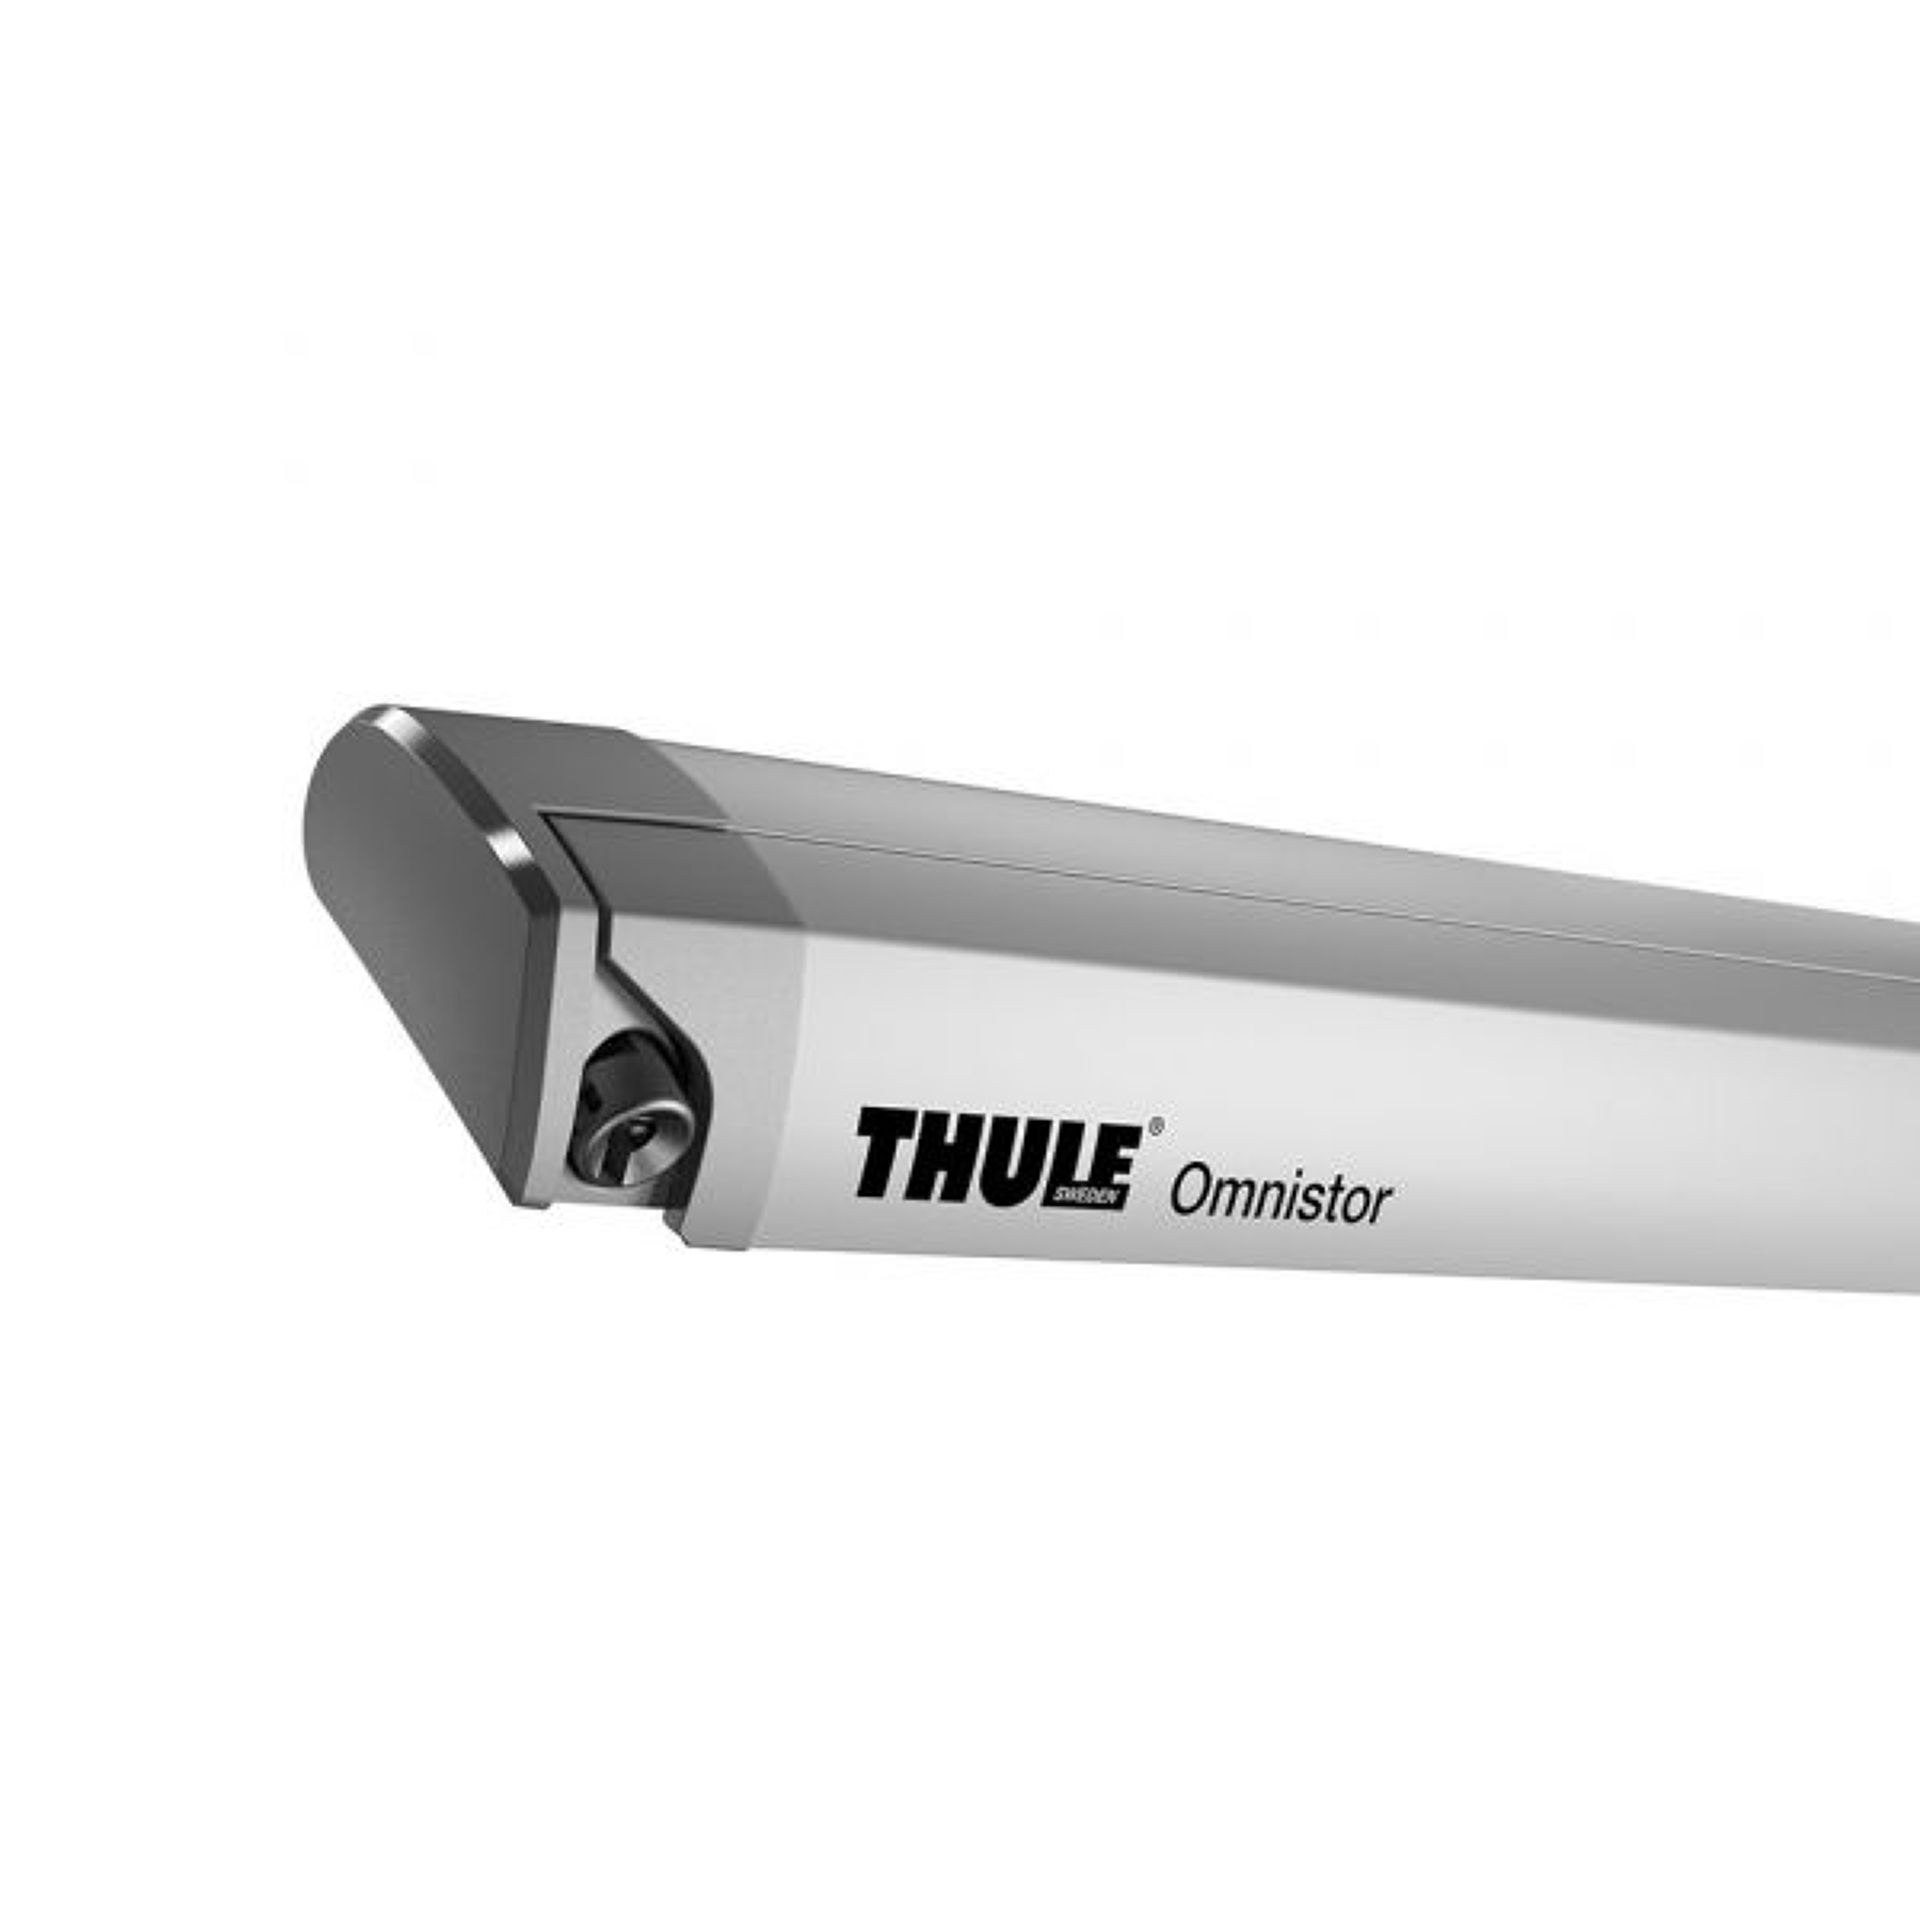 Thule Omnistor 6300 Ducato paket 3,25 m stříbrná